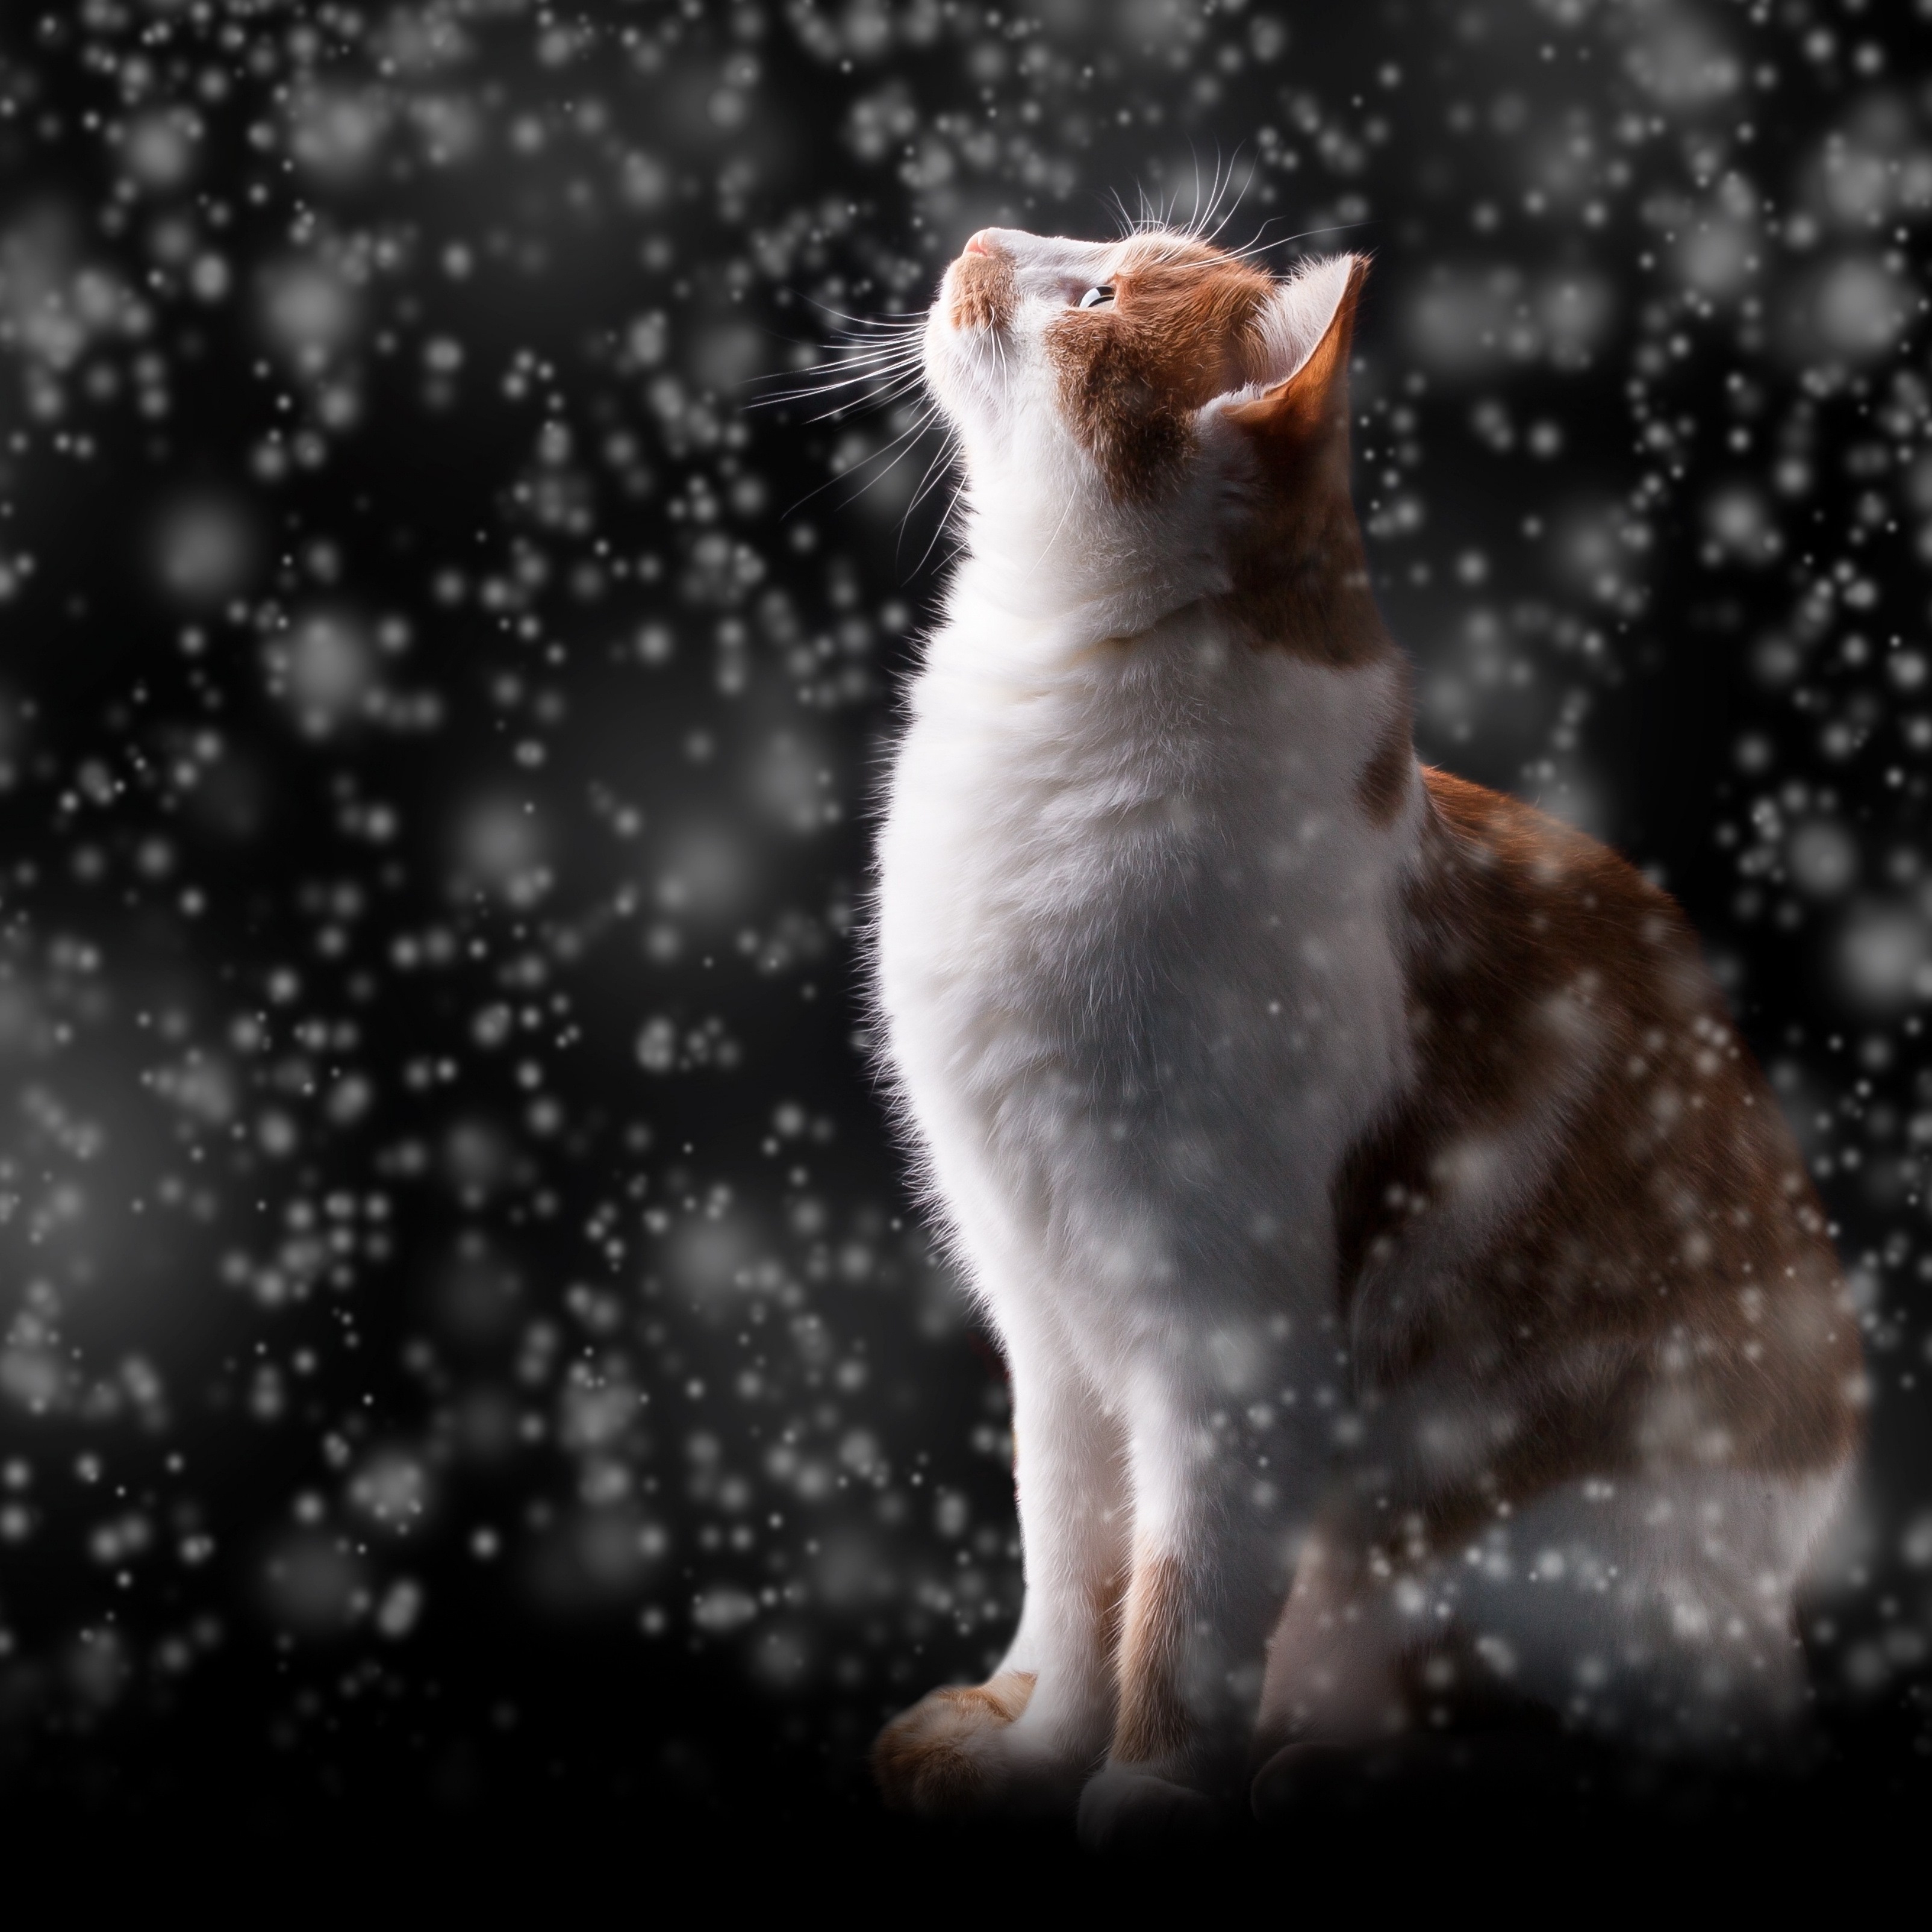 iPad Wallpapers Winter Snow Flakes Red Cat Kitten iPad Wallpaper 3208x3208 px